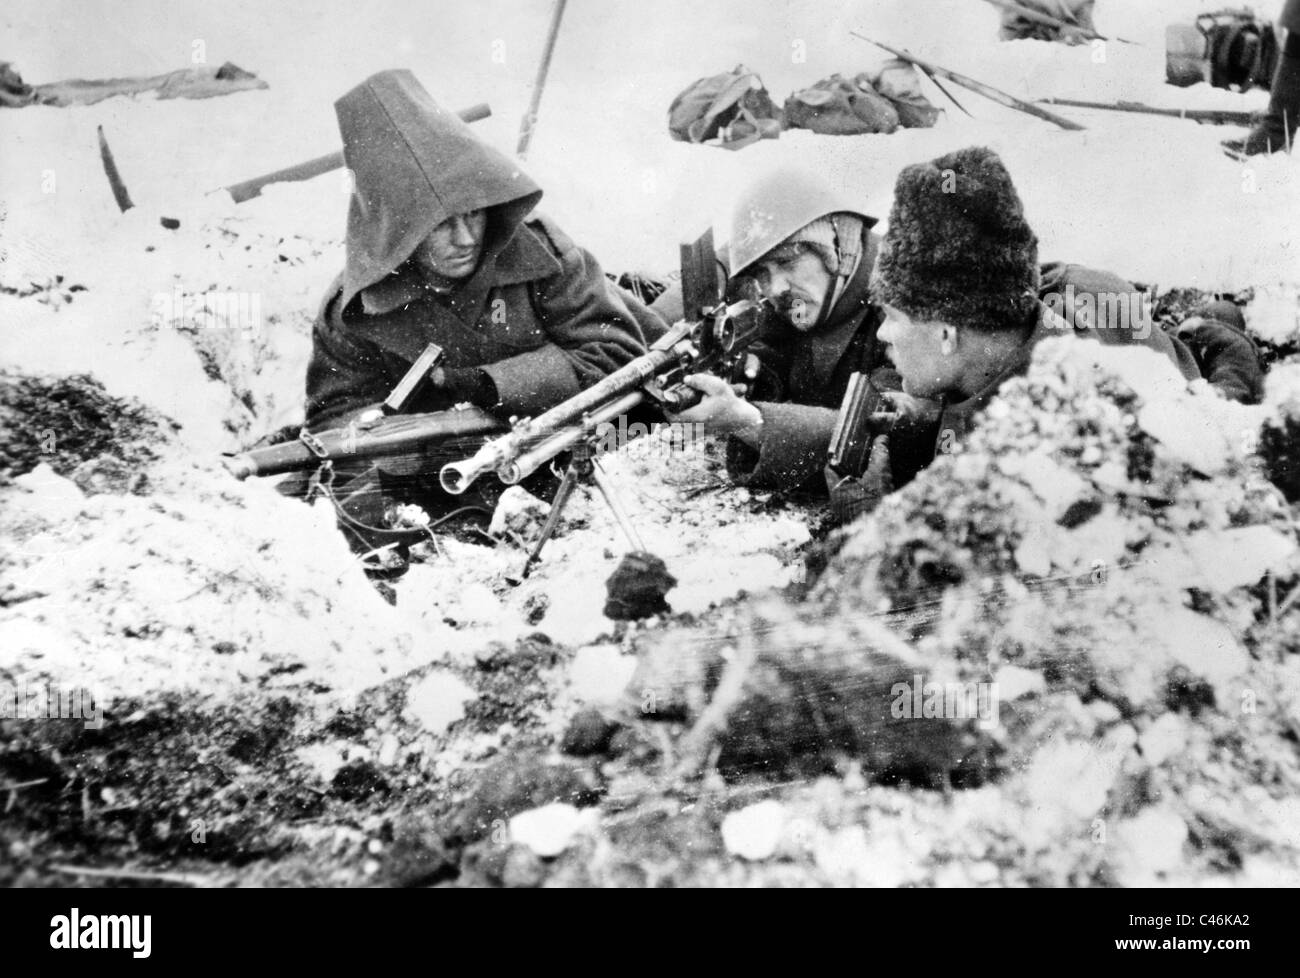 Докажите что вторая мировая. Битва за Сталинград 1942-1943. Сталинградская битва зима 1942. Фото немецких солдат 1943 Сталинград.